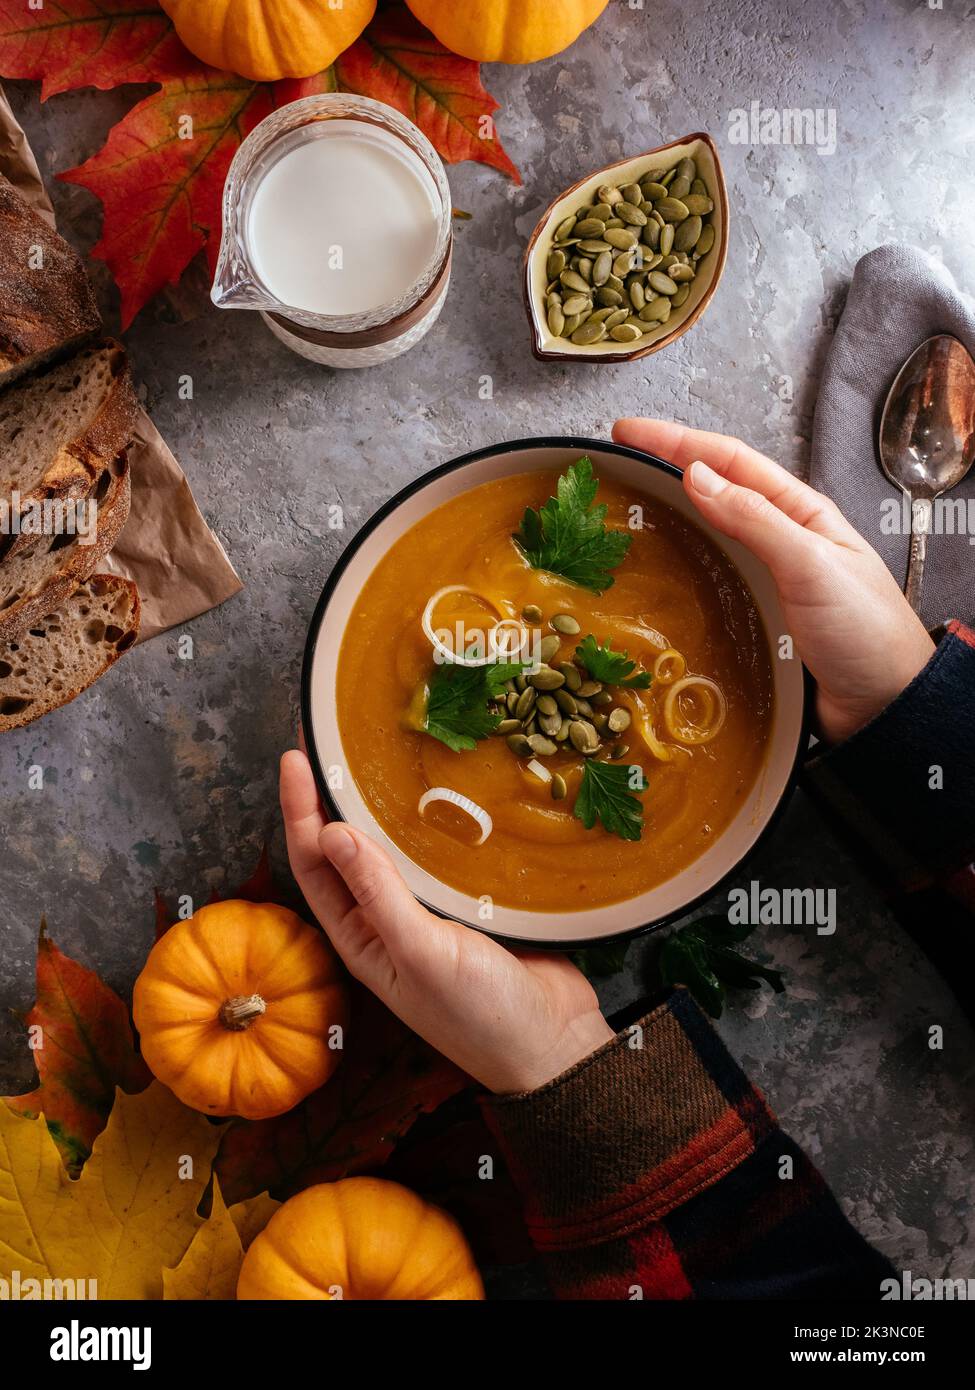 La chica sostiene un plato de sopa de calabaza con las manos contra th Foto de stock